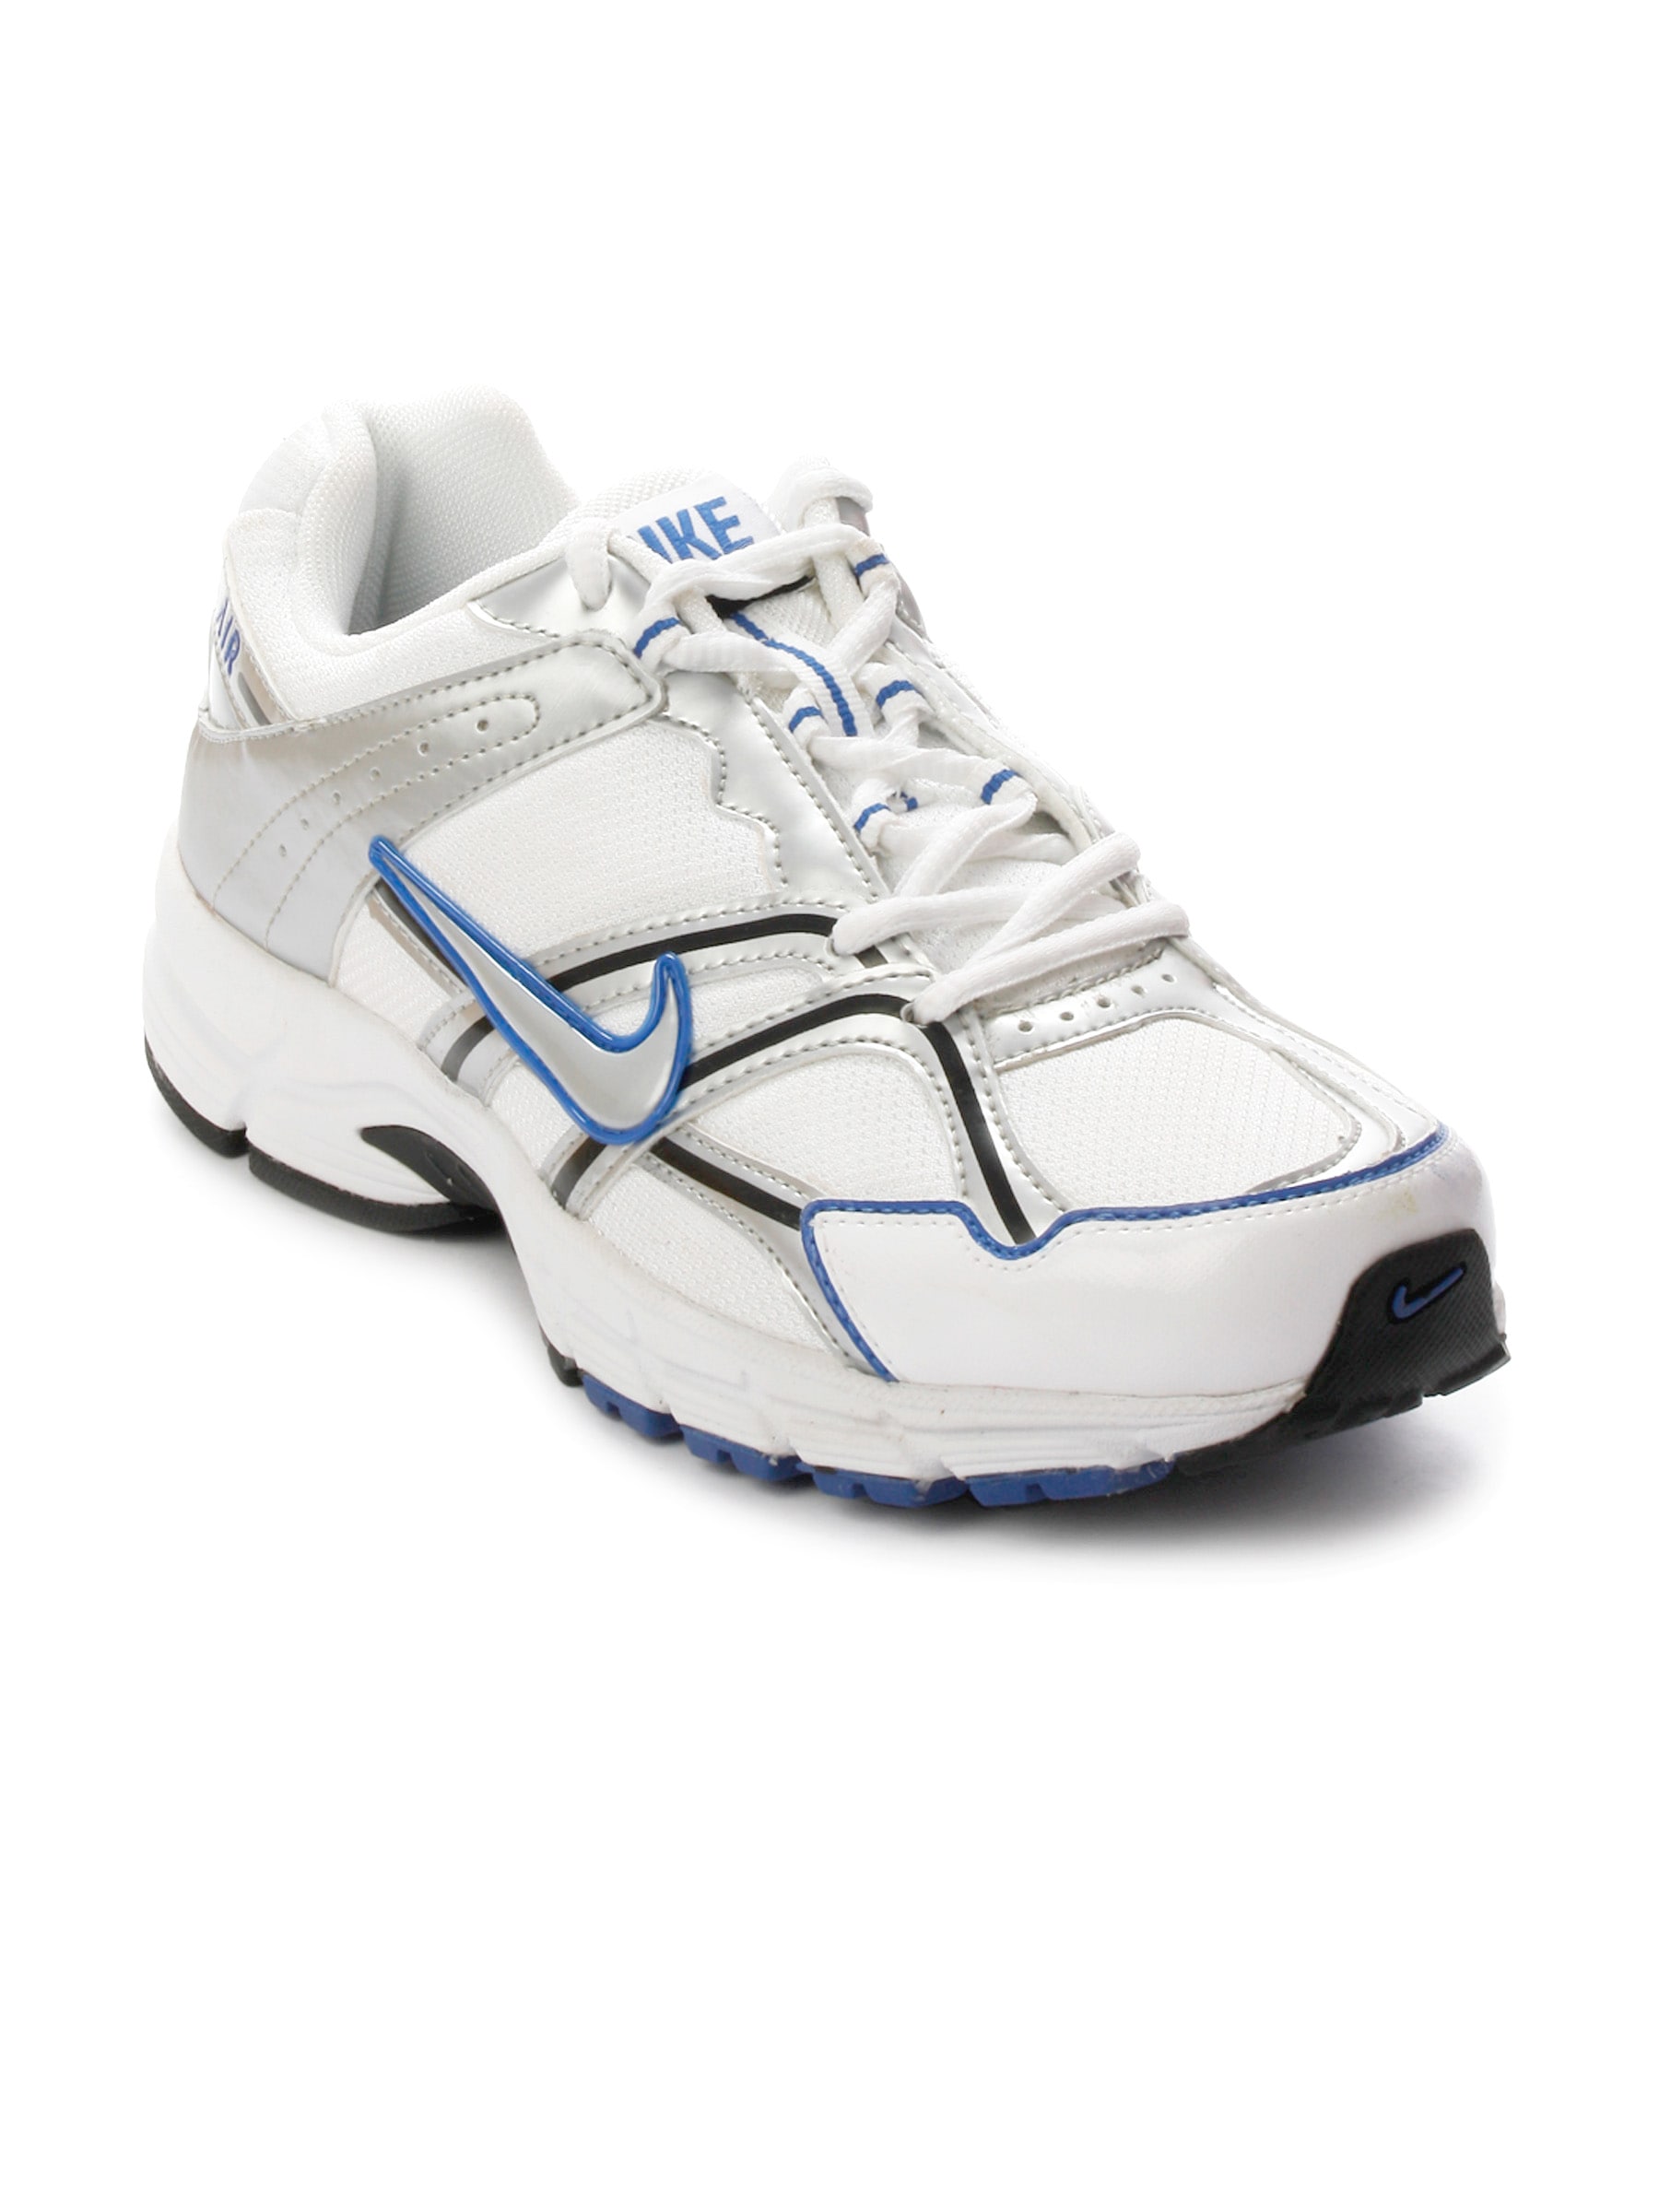 Nike Men Air Impetus II White Sports Shoe